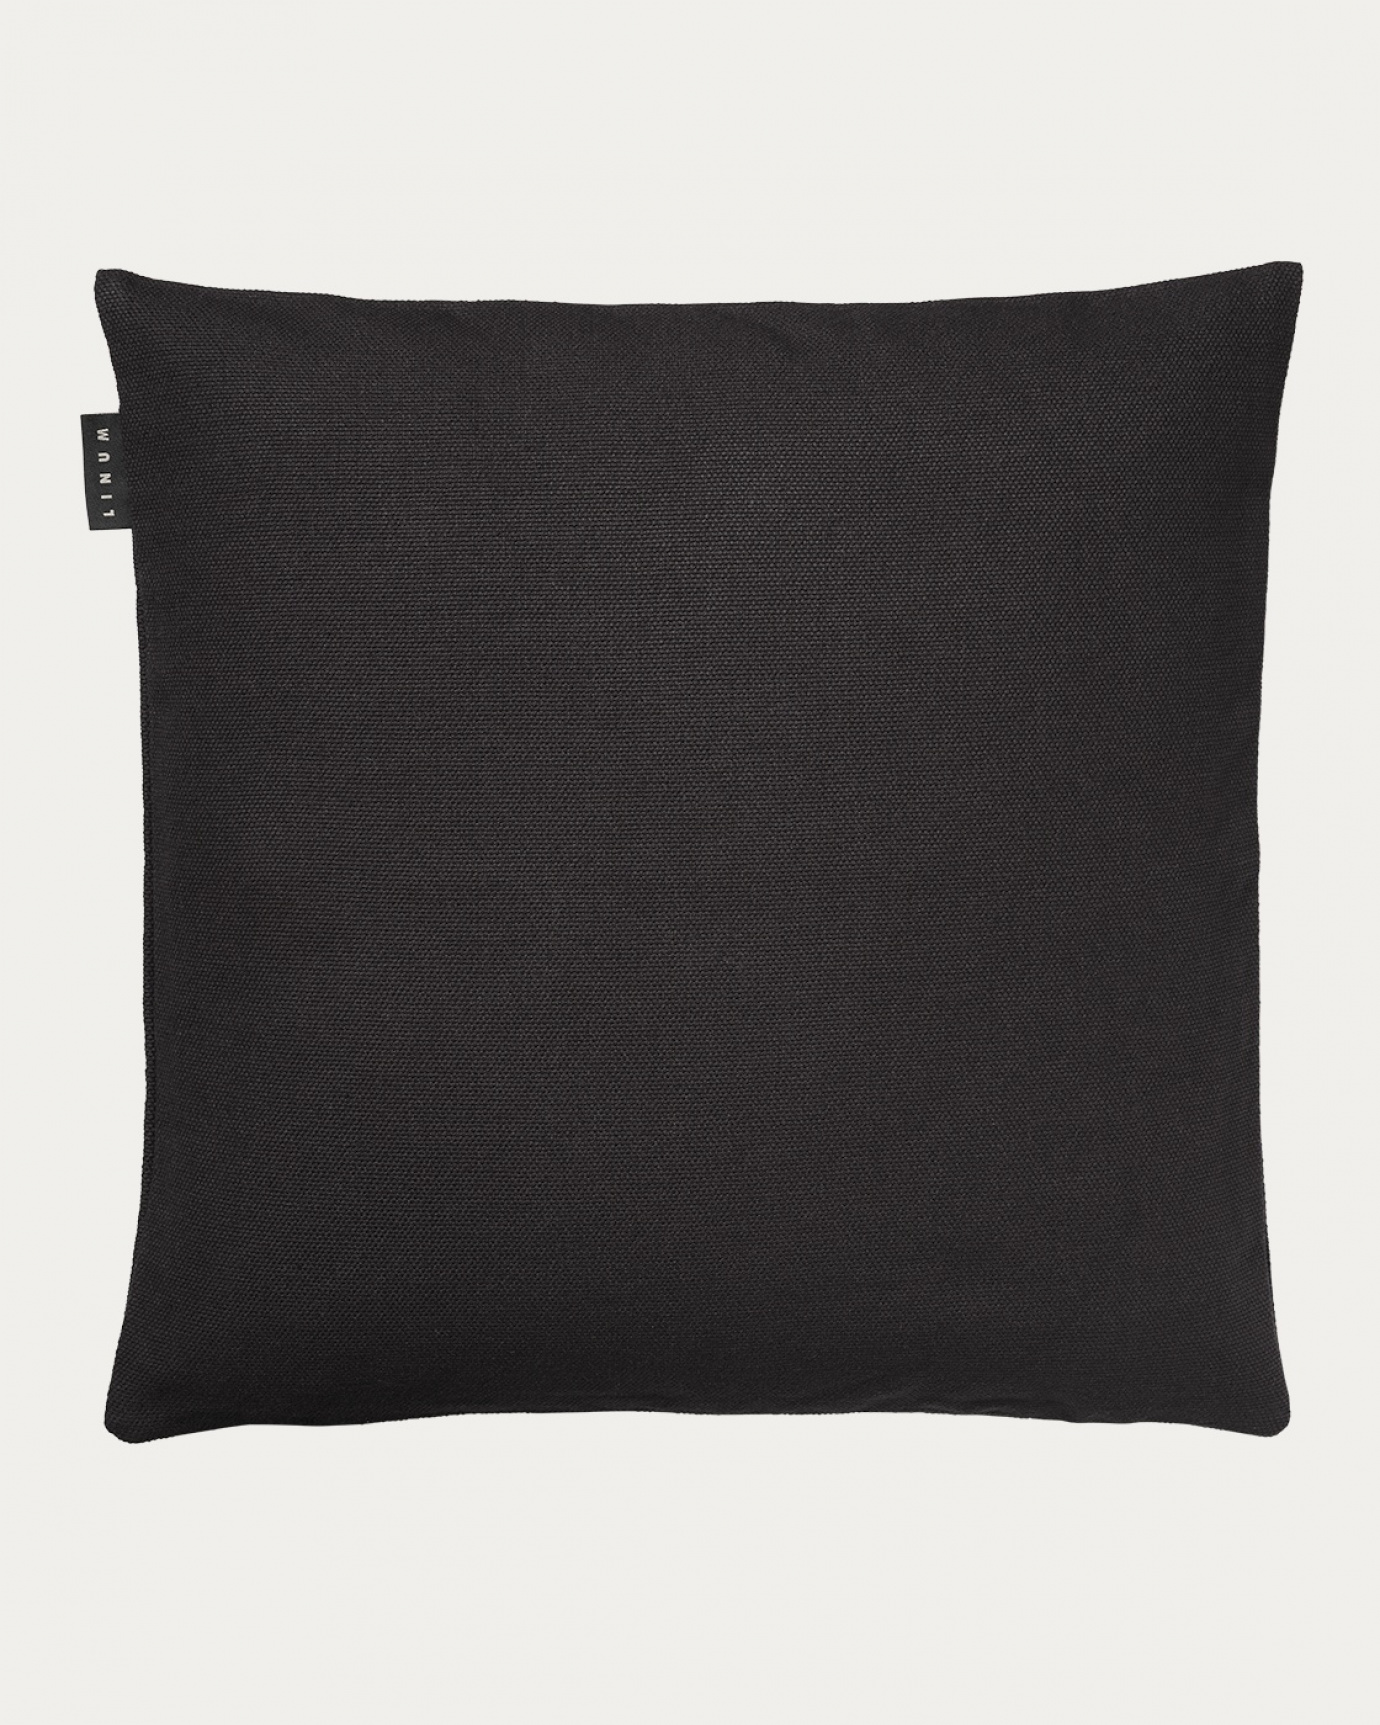 Produktbild schwarze melange PEPPER Kissenhülle aus weicher Baumwolle von LINUM DESIGN. Einfach zu waschen und langlebig für Generationen. Größe 60x60 cm.